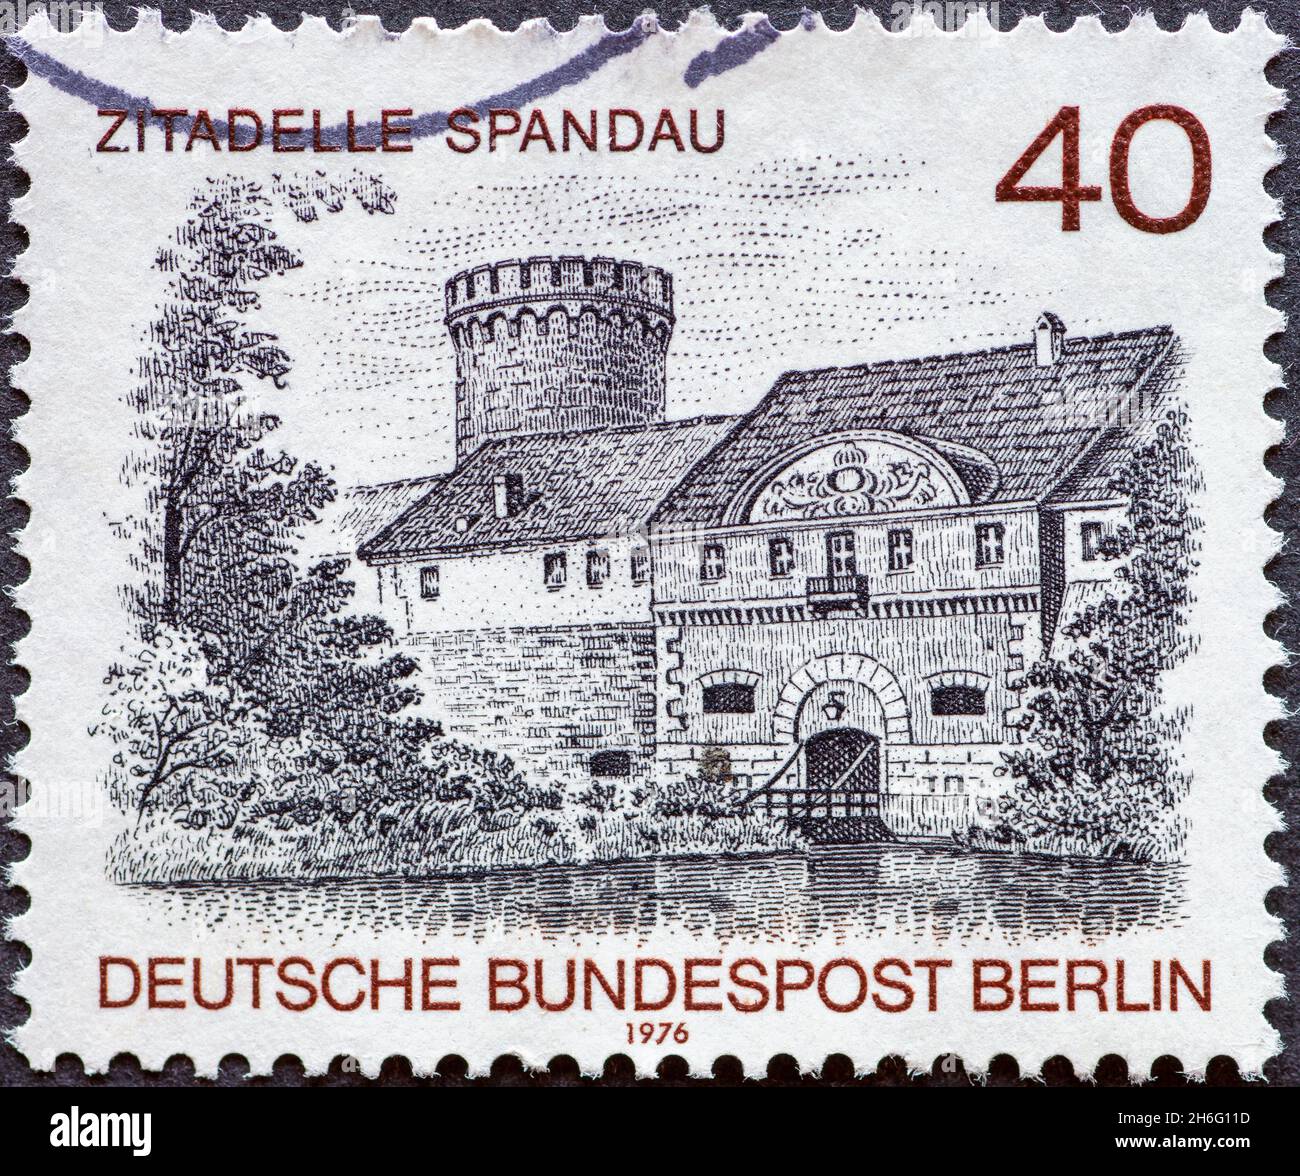 GERMANIA, Berlino - CIRCA 1976: Un francobollo dalla Germania, Berlino che mostra una vista di Berlino: L'edificio Zitatell a Spandau Foto Stock